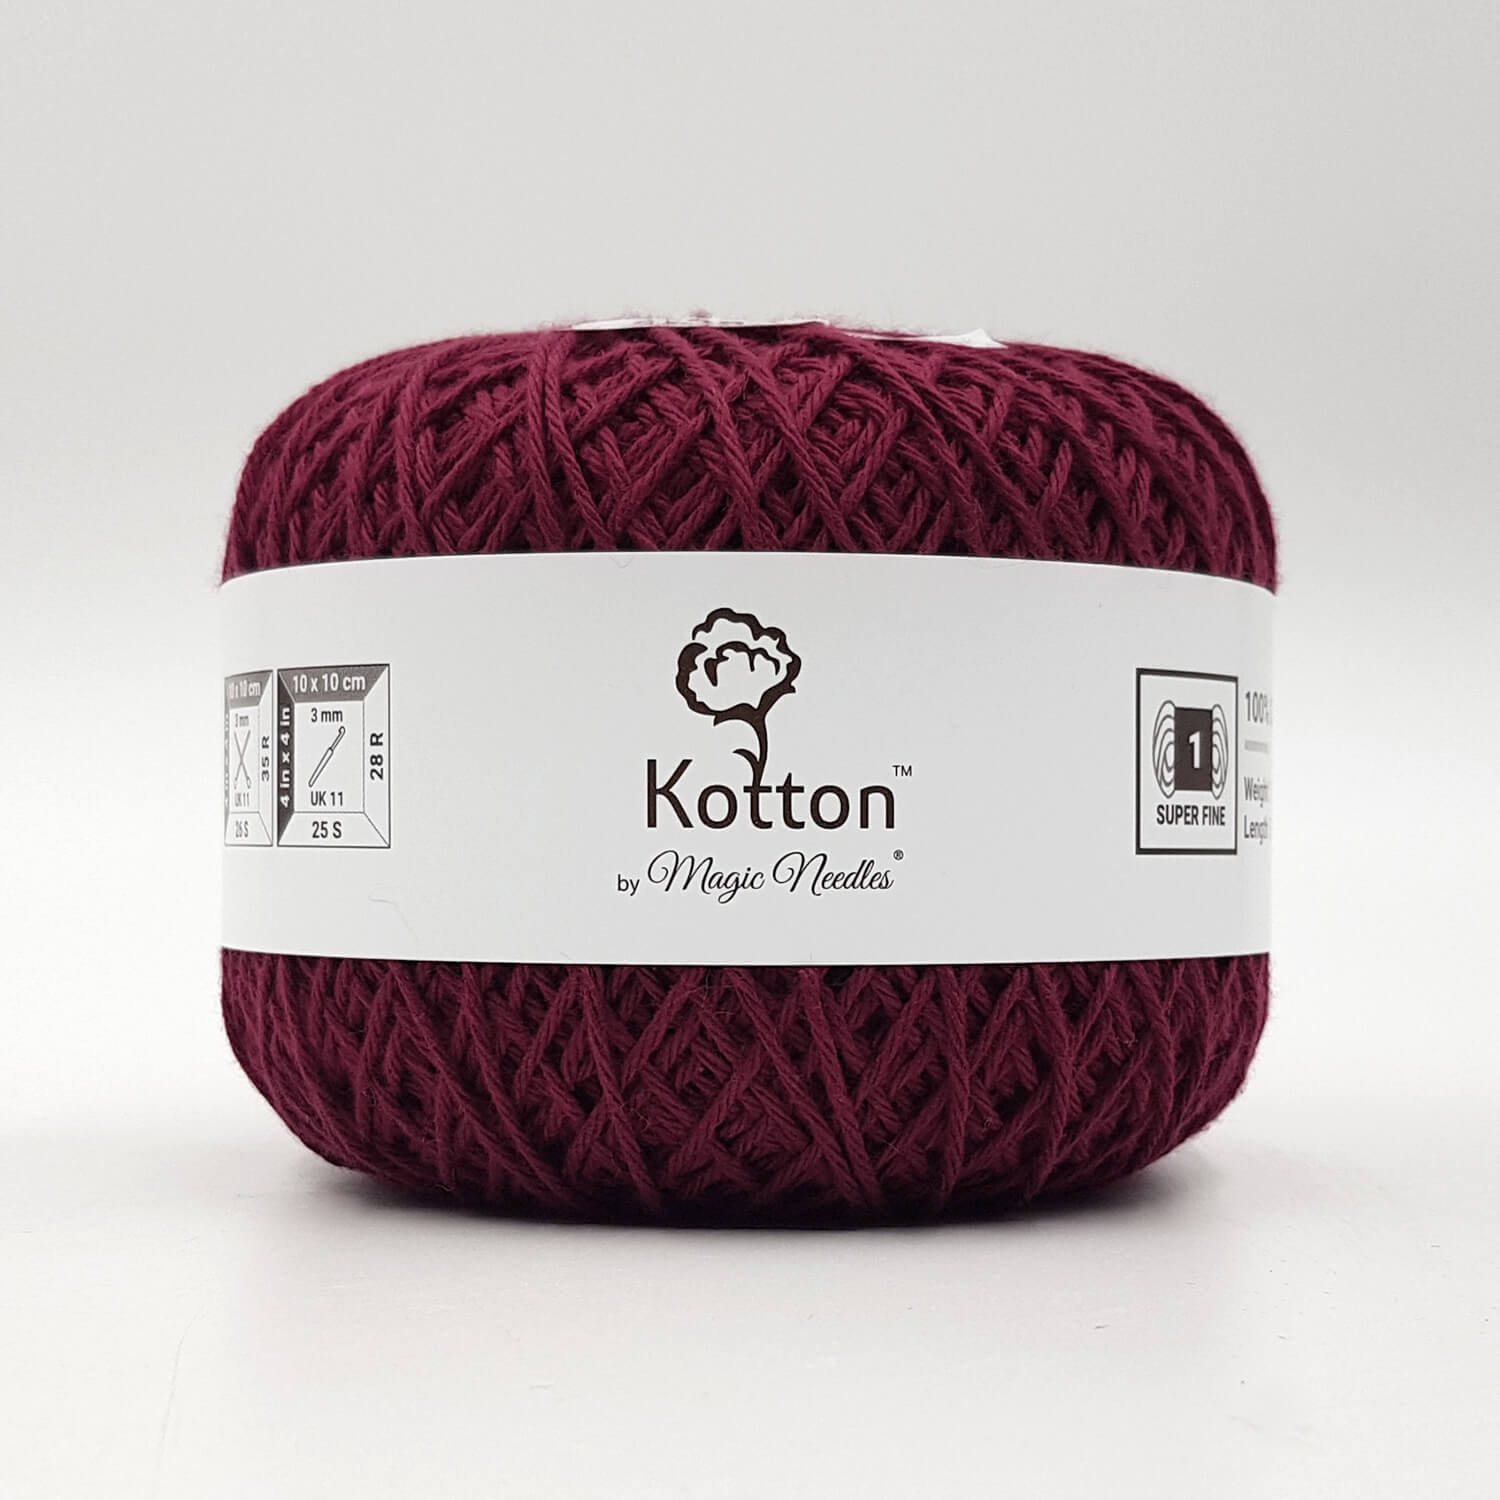 Kotton 4 ply Cotton Yarn 150 g - Maroon 38